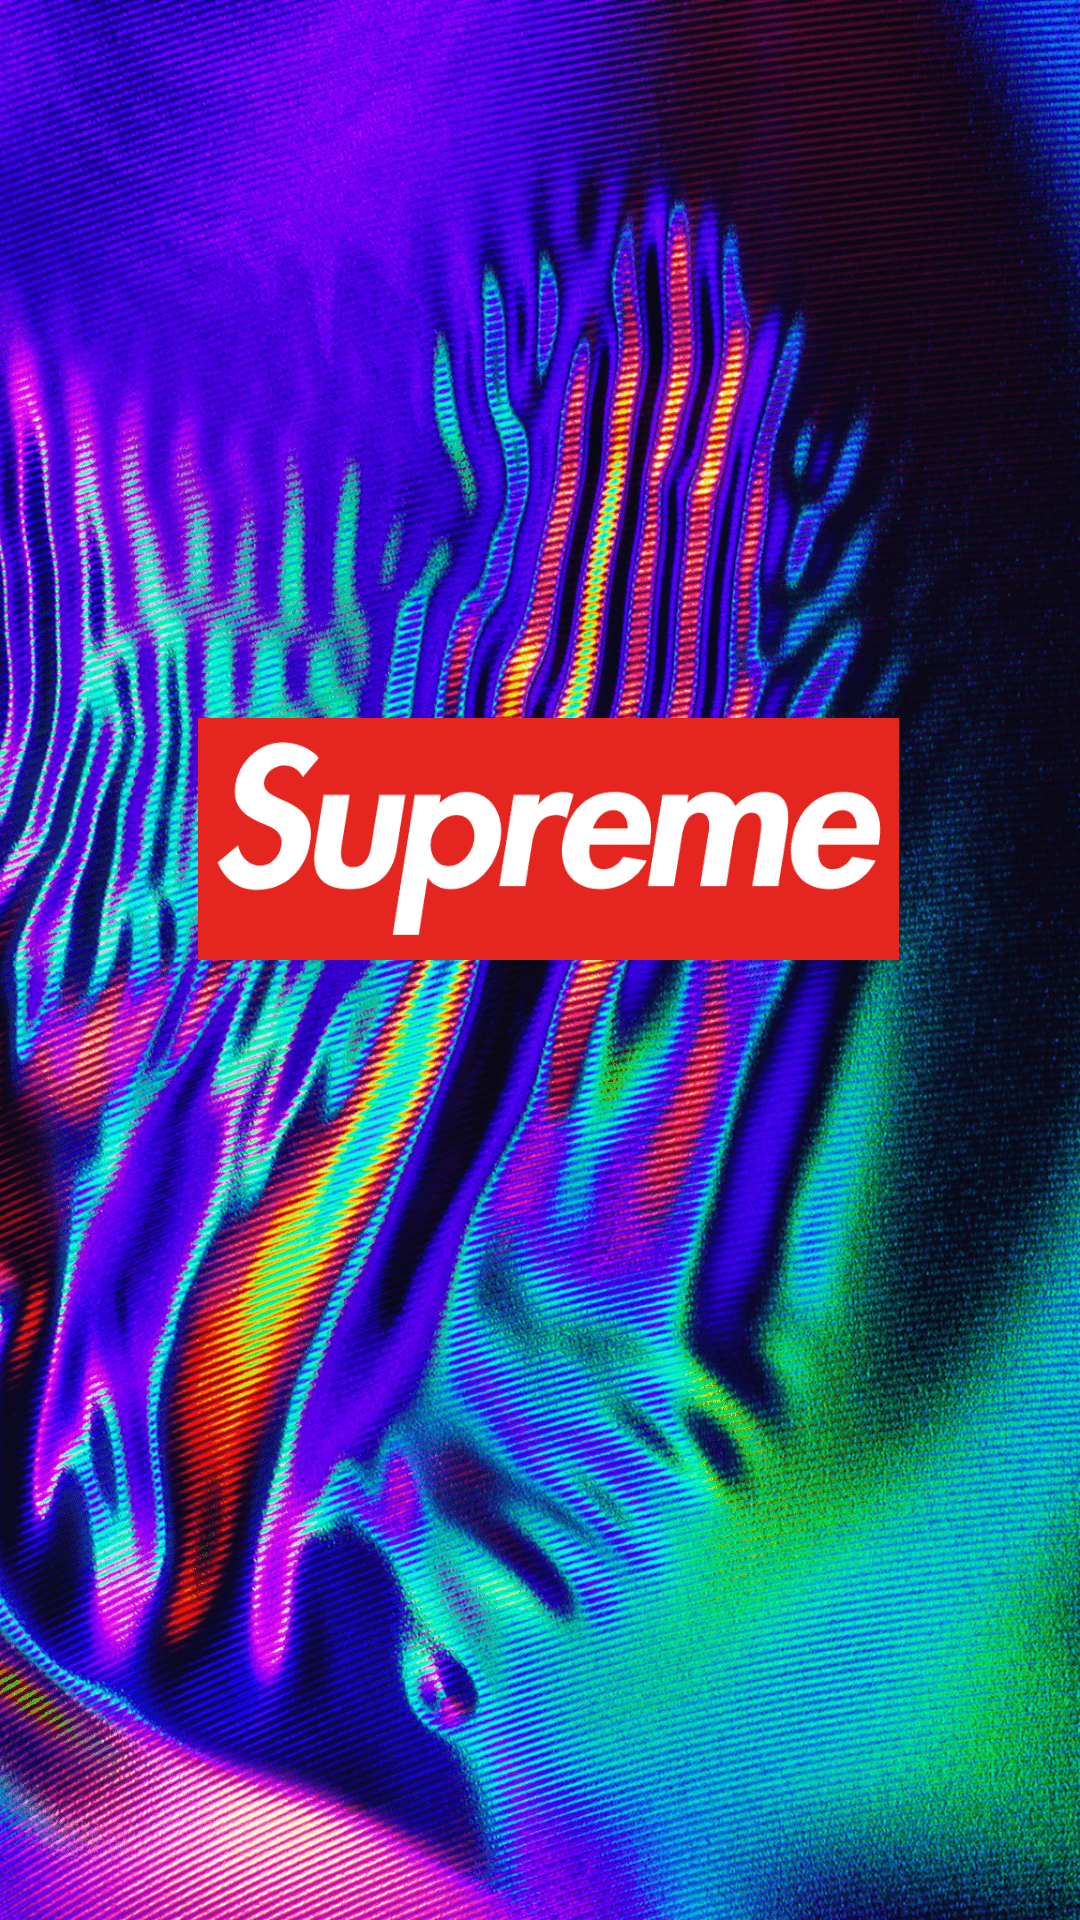 A supreme logo on top of an abstract image - Supreme